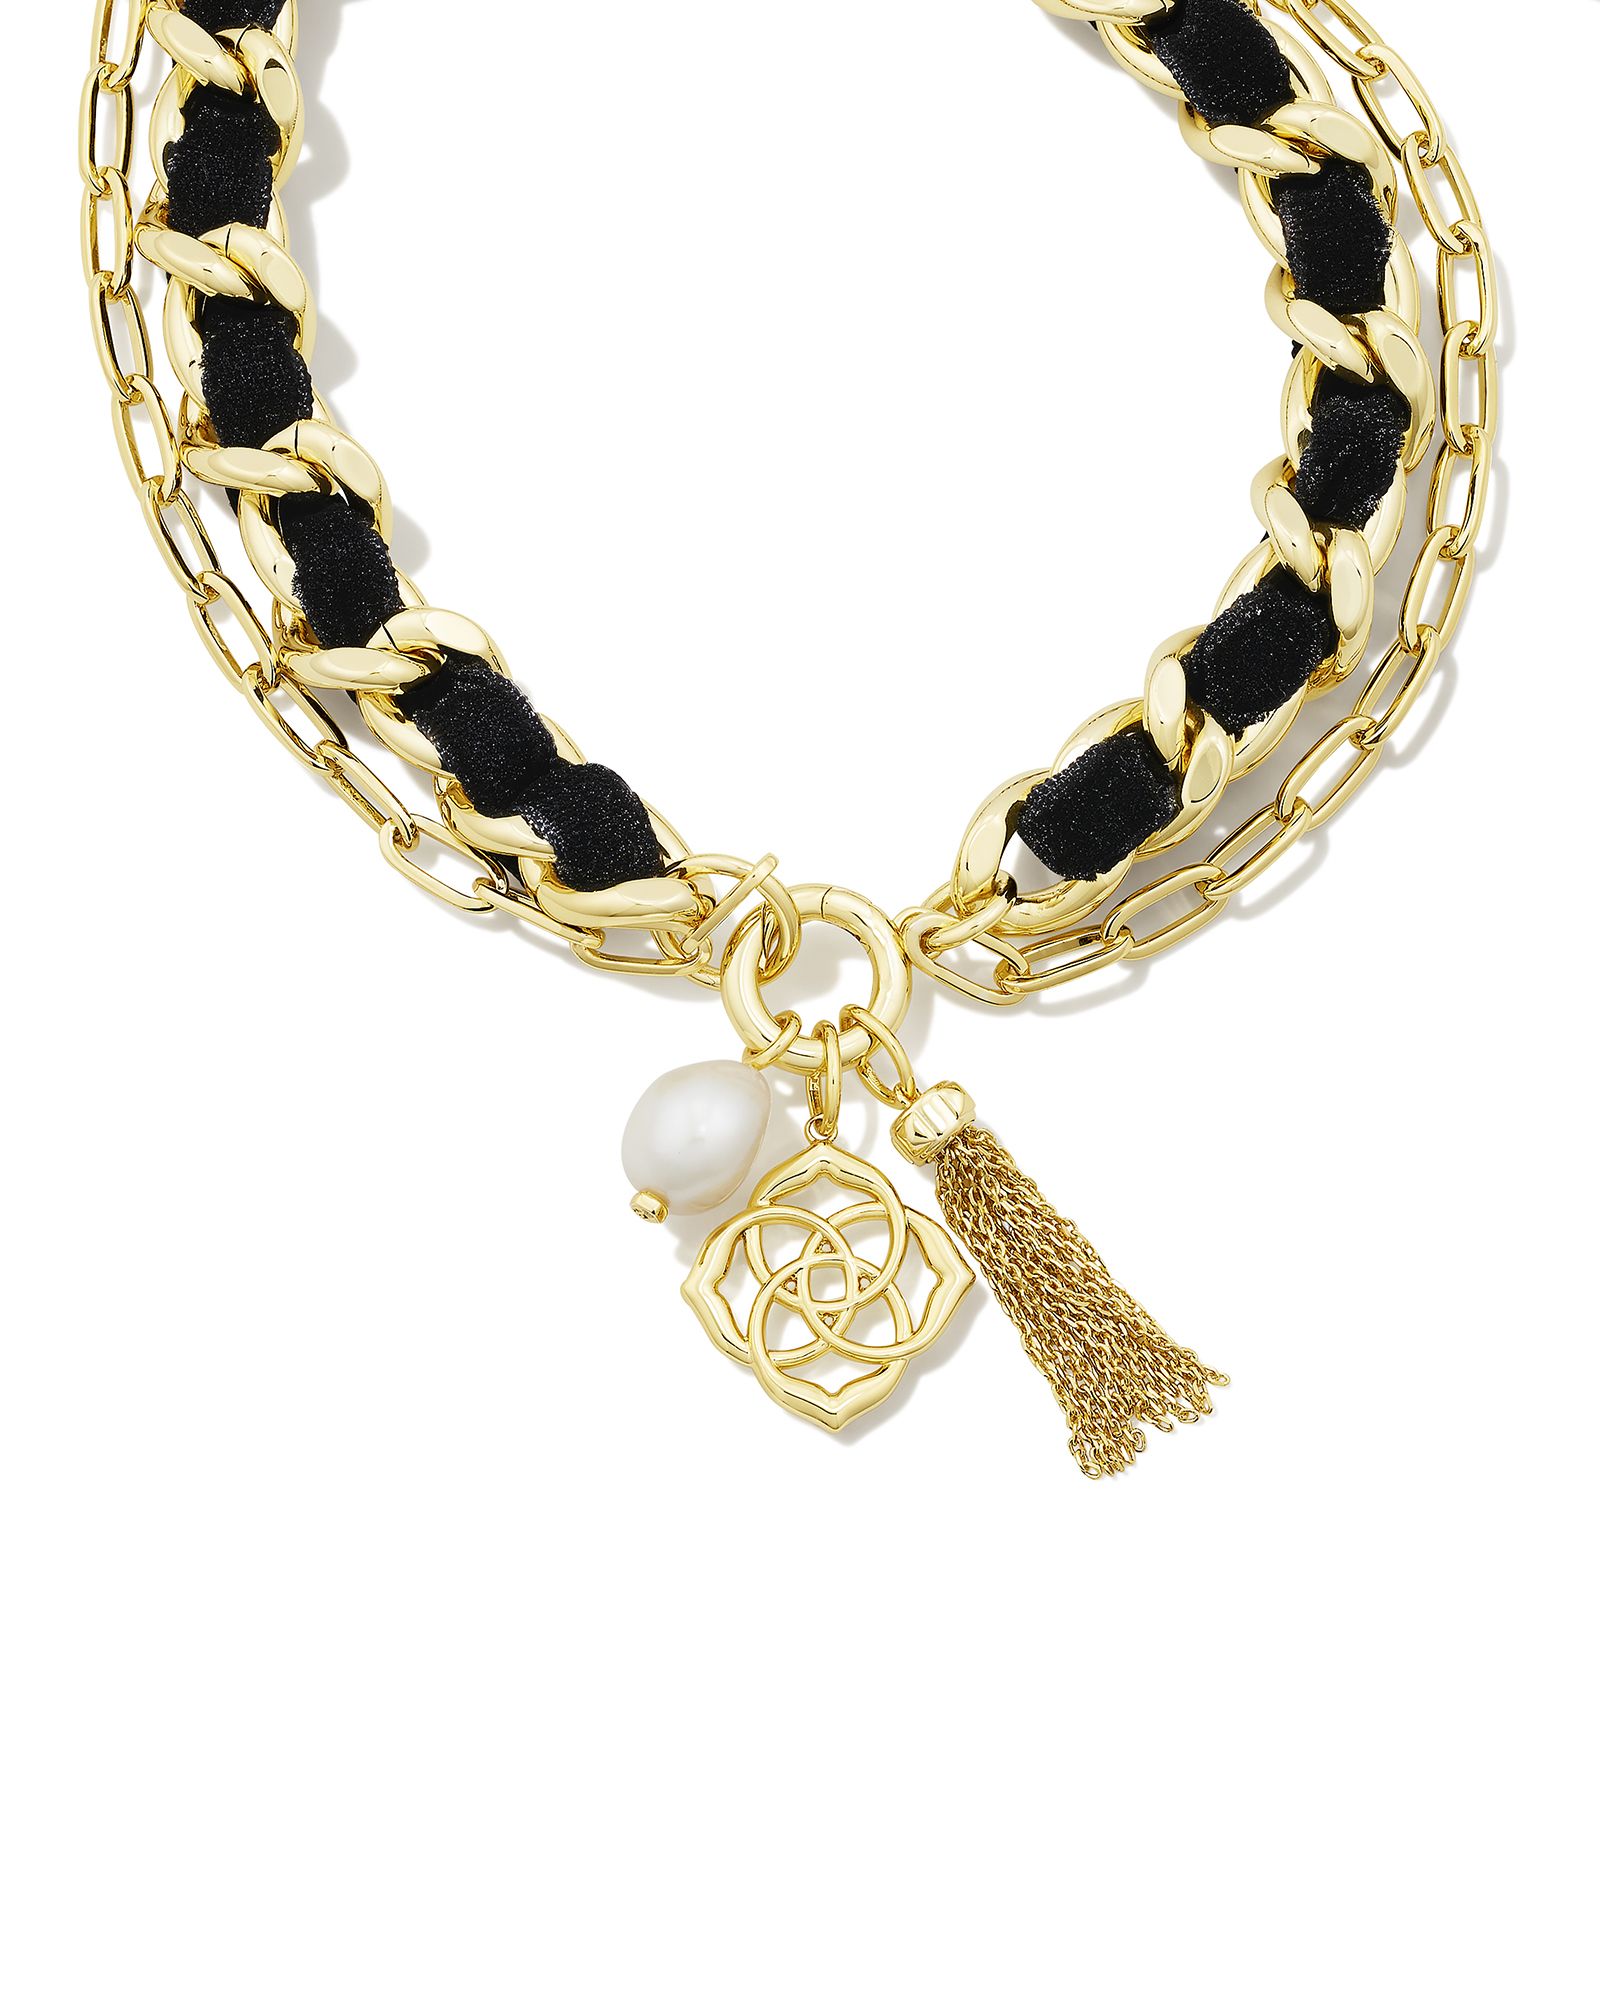 Everleigh Gold Velvet Necklace in Black | Kendra Scott | Kendra Scott